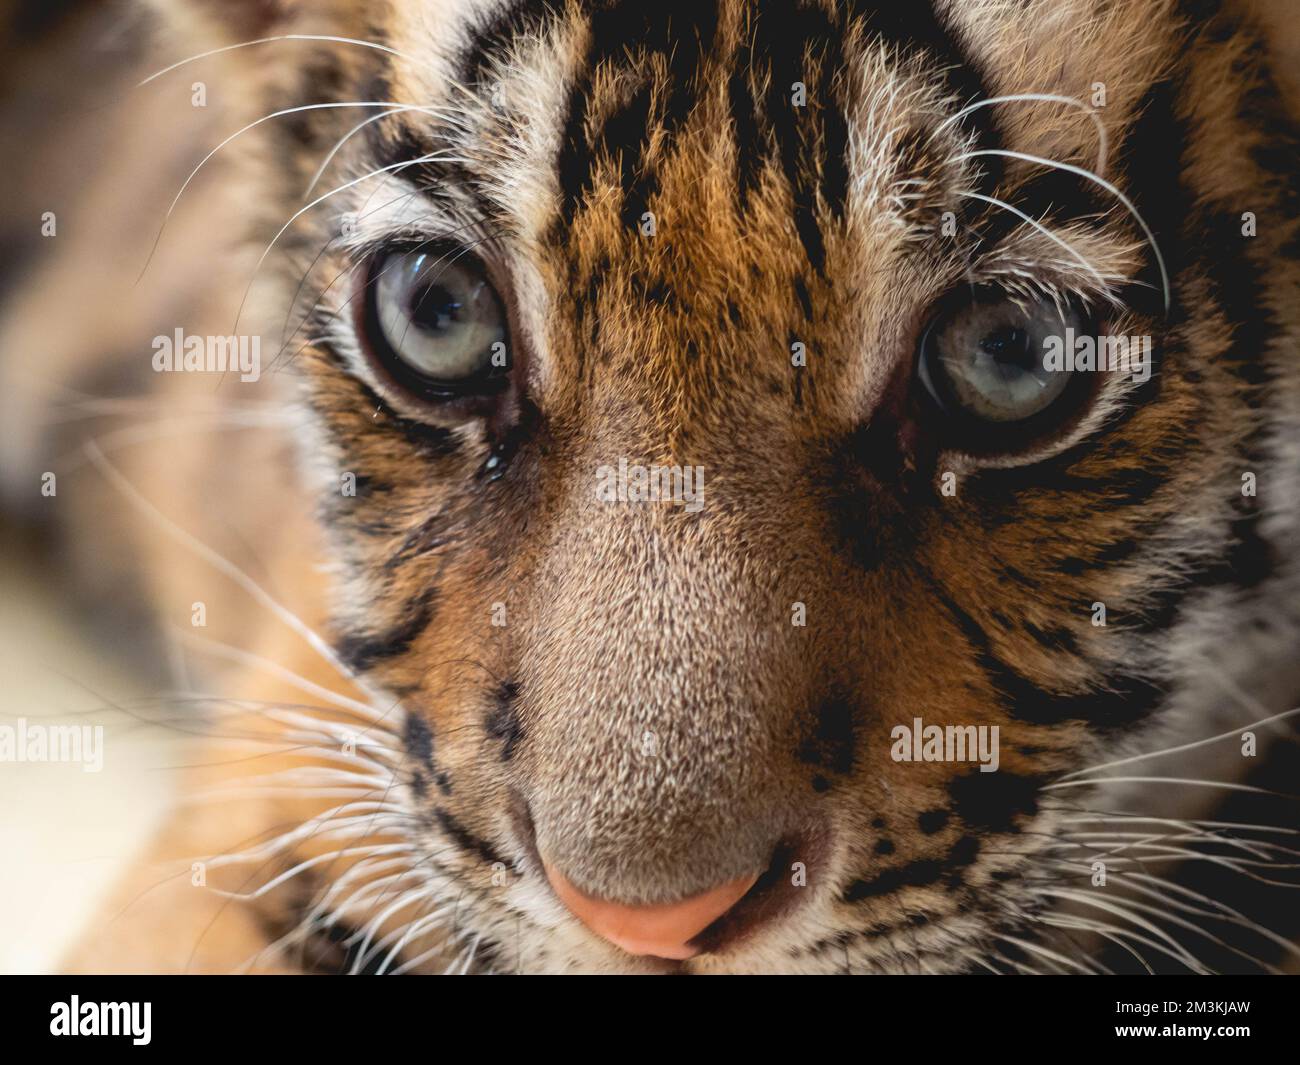 Little Tiger à Tiger Park province de Chonburi, Thaïlande Banque D'Images